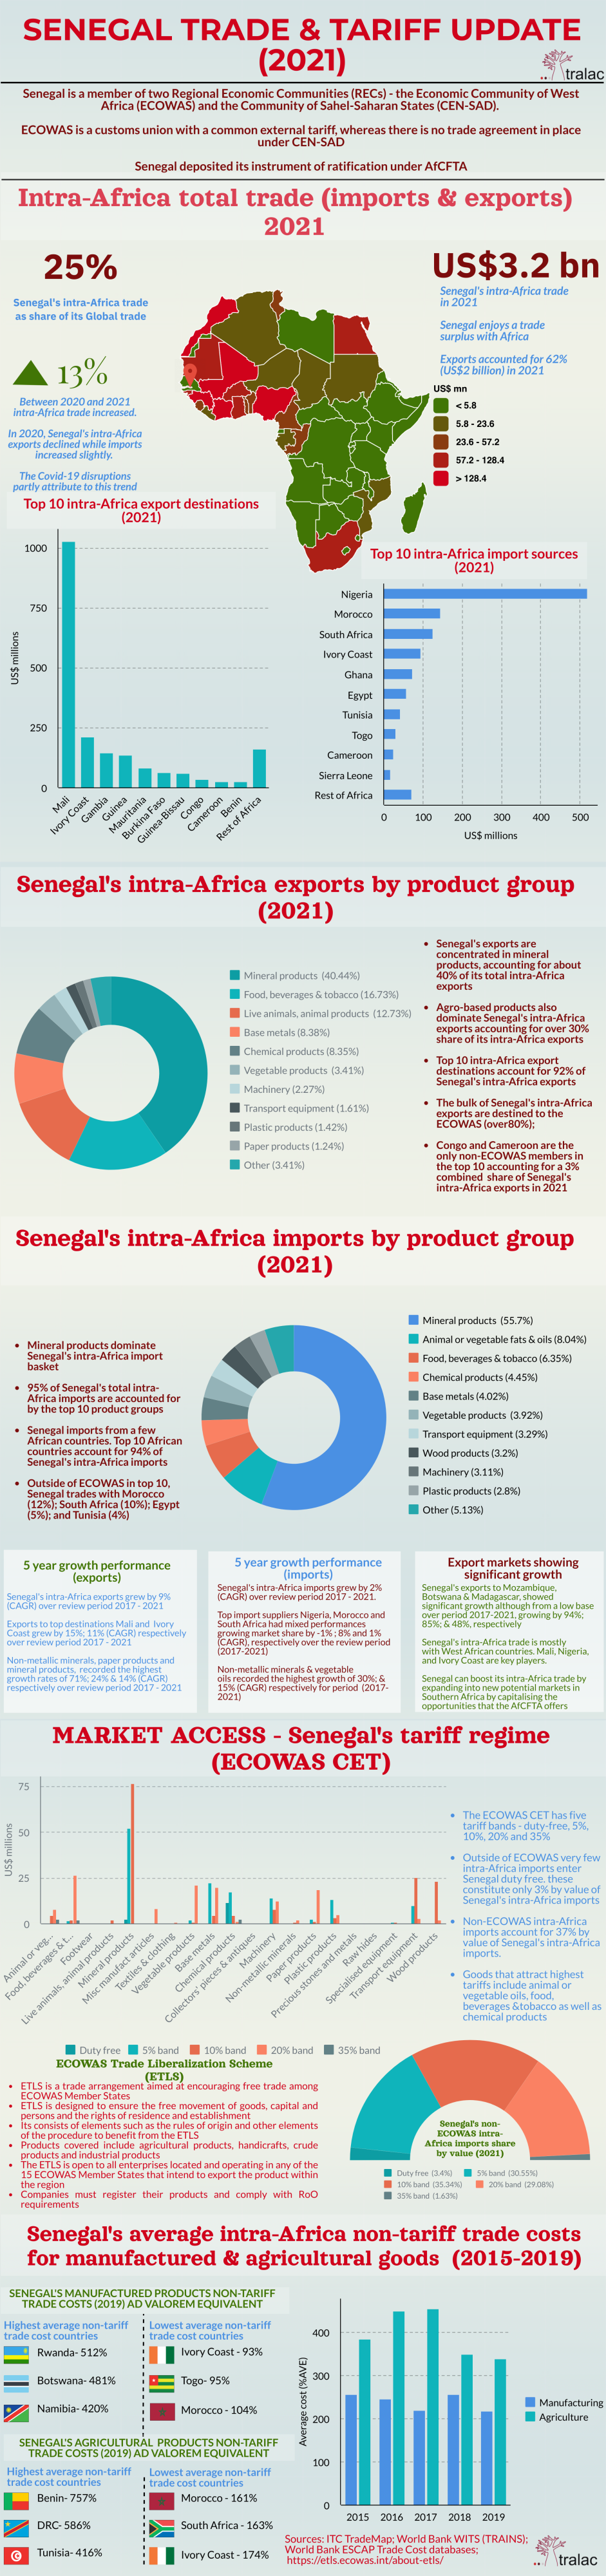 Senegal trade and tariff update 2021